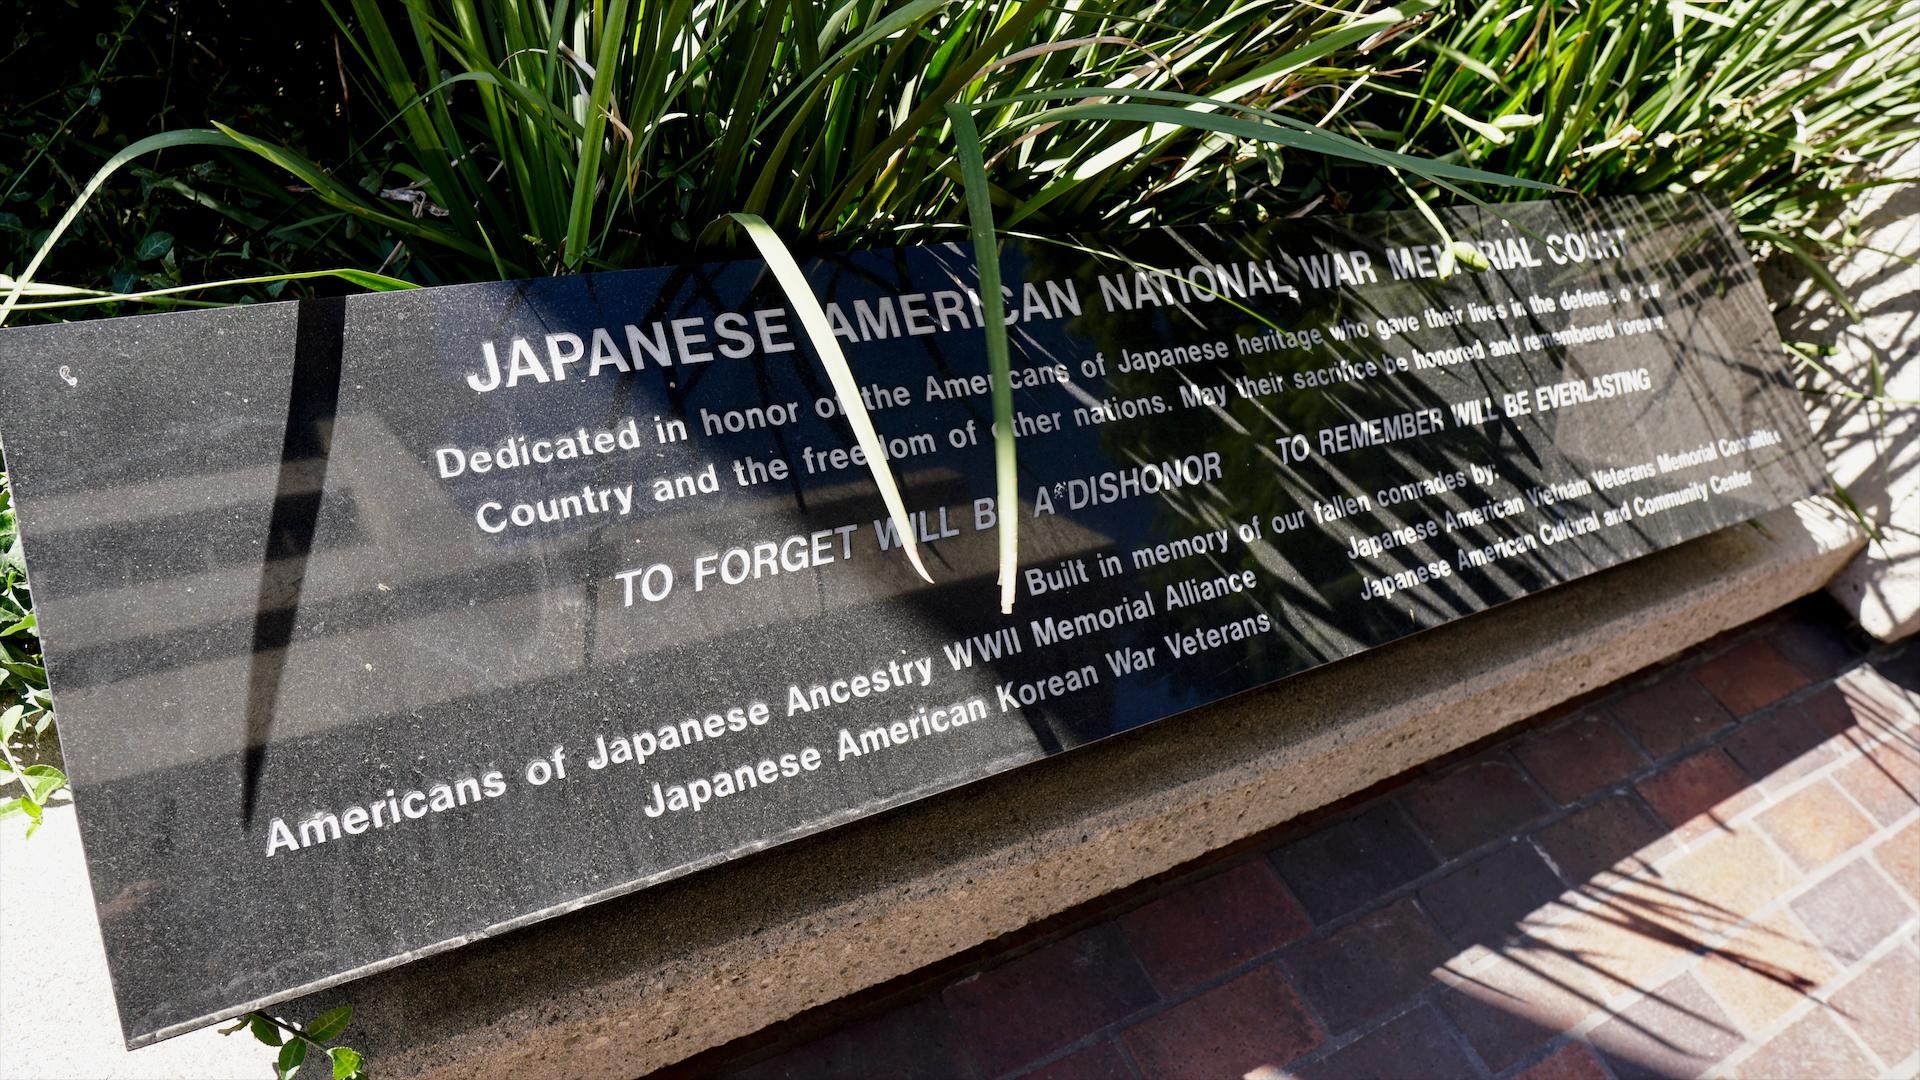 JAPANESE AMERICAN NATIONAL WAR MEMORIAL